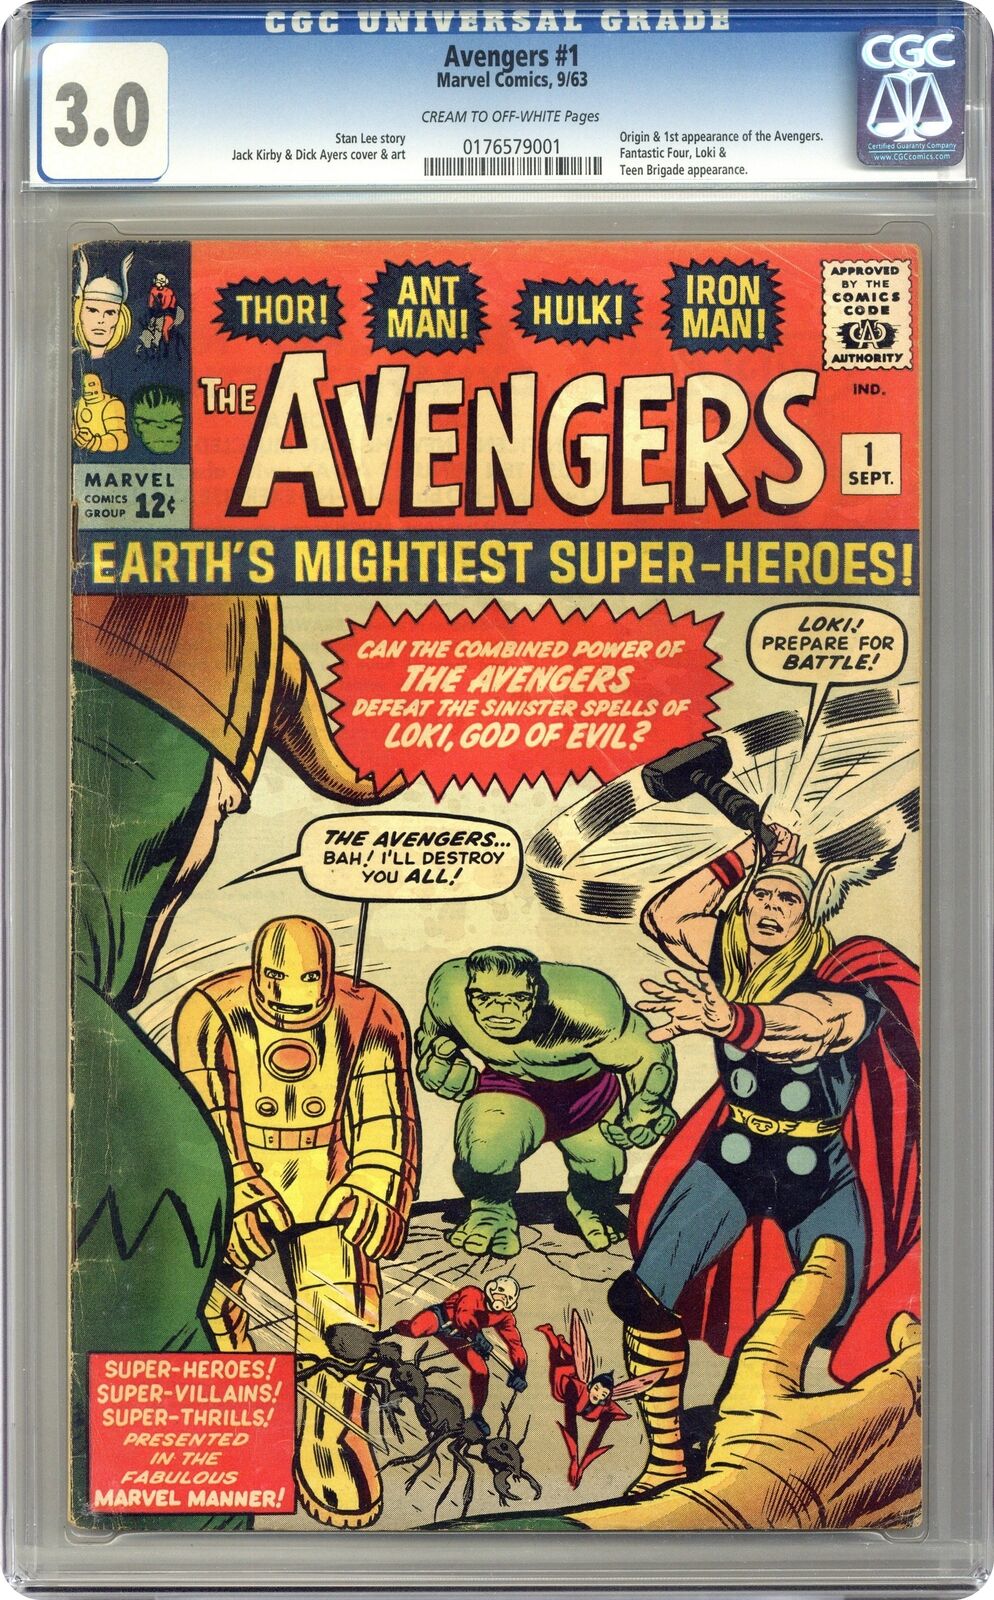 Avengers #1 CGC 3.0 1963 0176579001 1st app. the Avengers